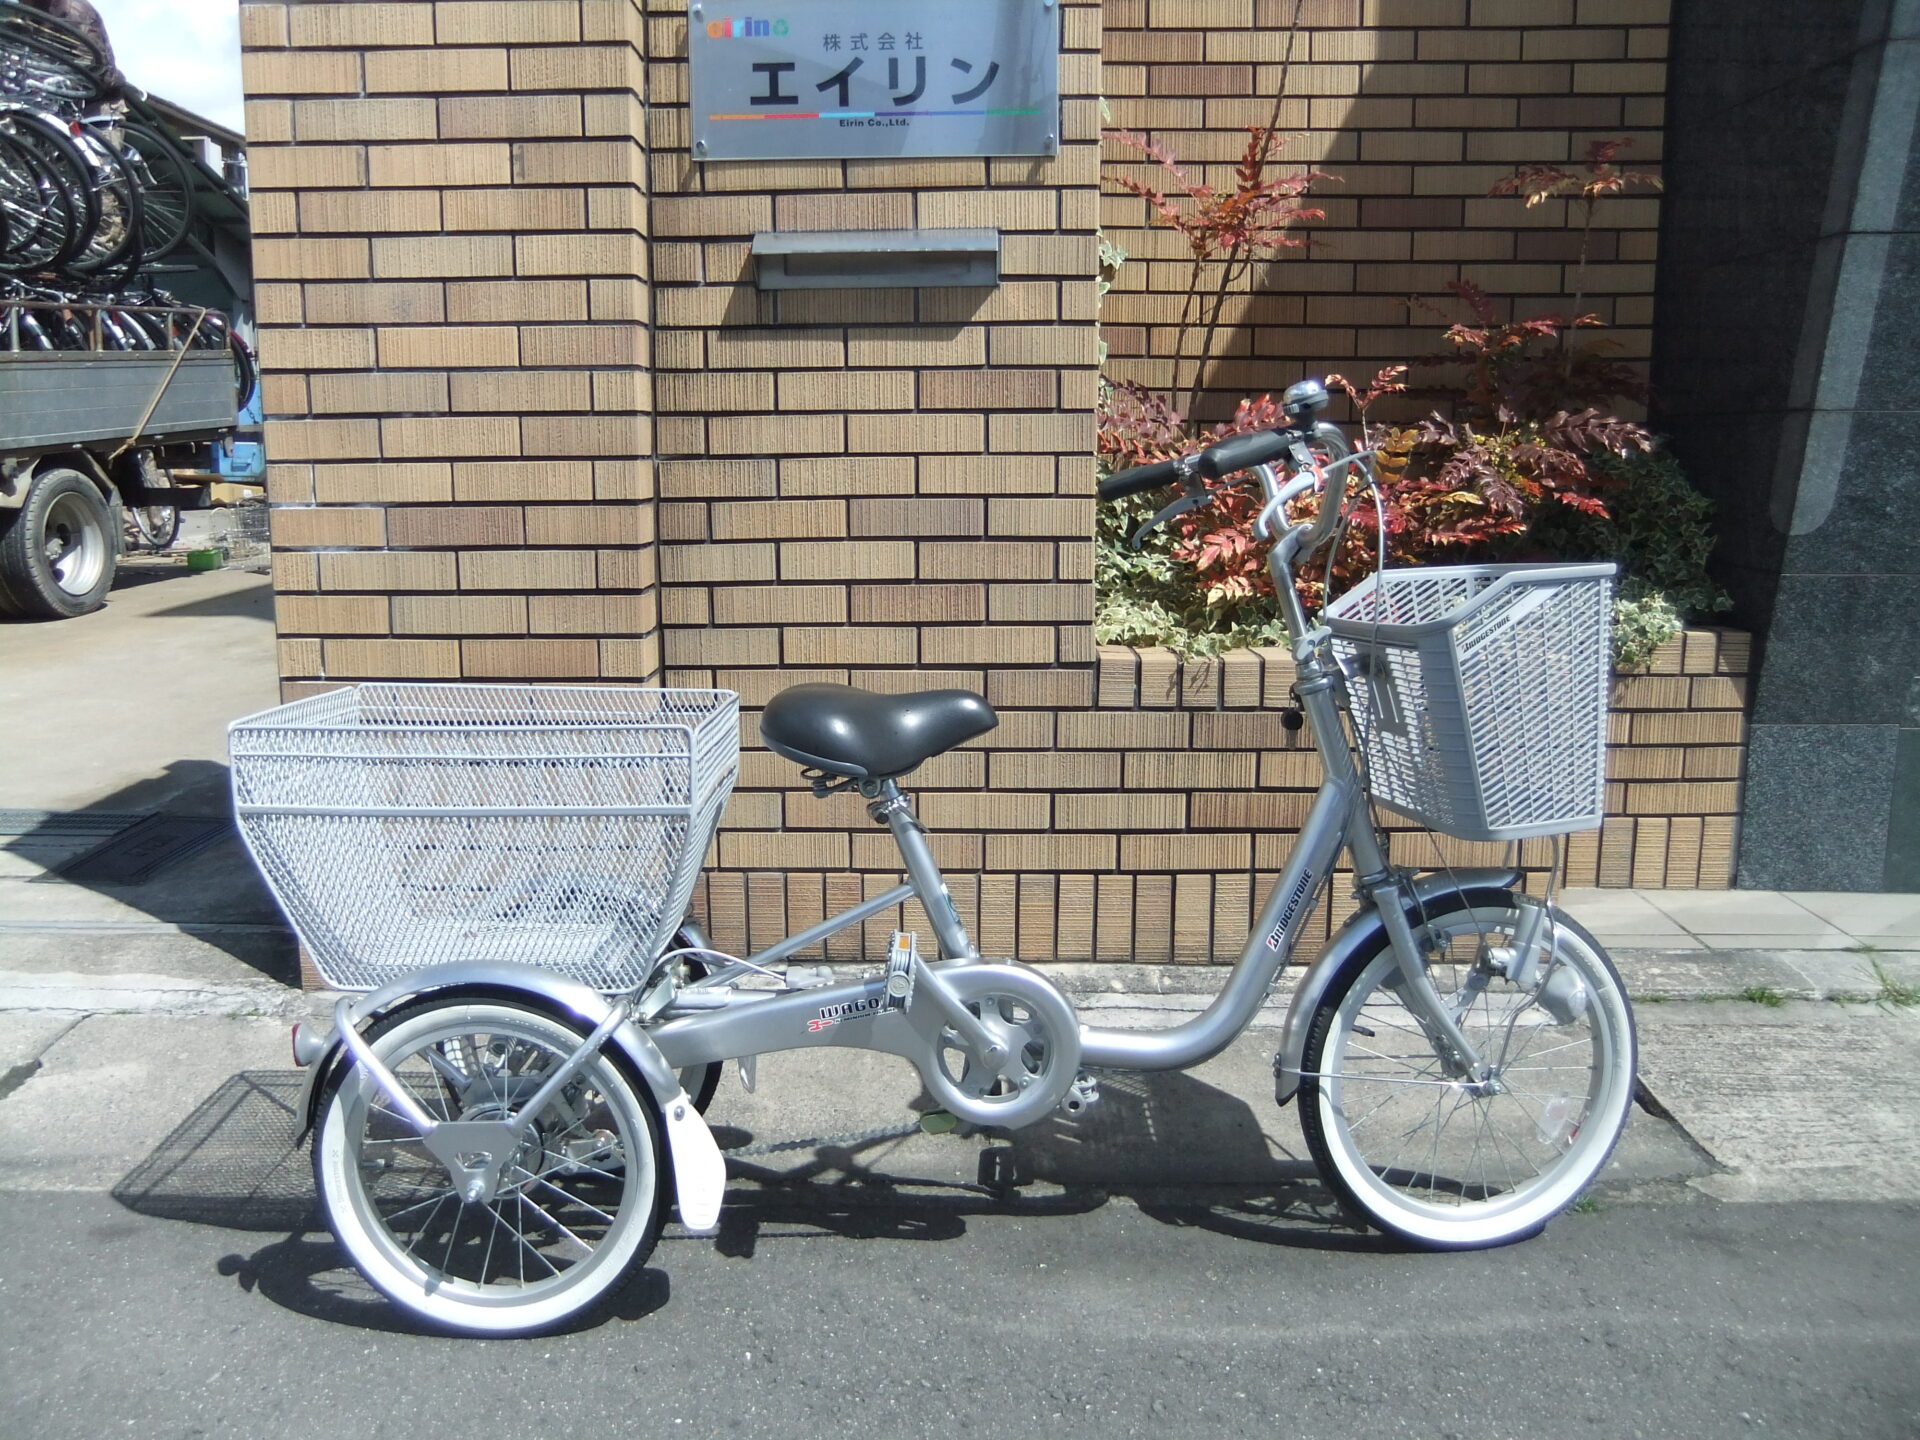 ブリヂストン大人用三輪自転車(中古)入荷！ | 京都の中古自転車・新車販売 サイクルショップ エイリン